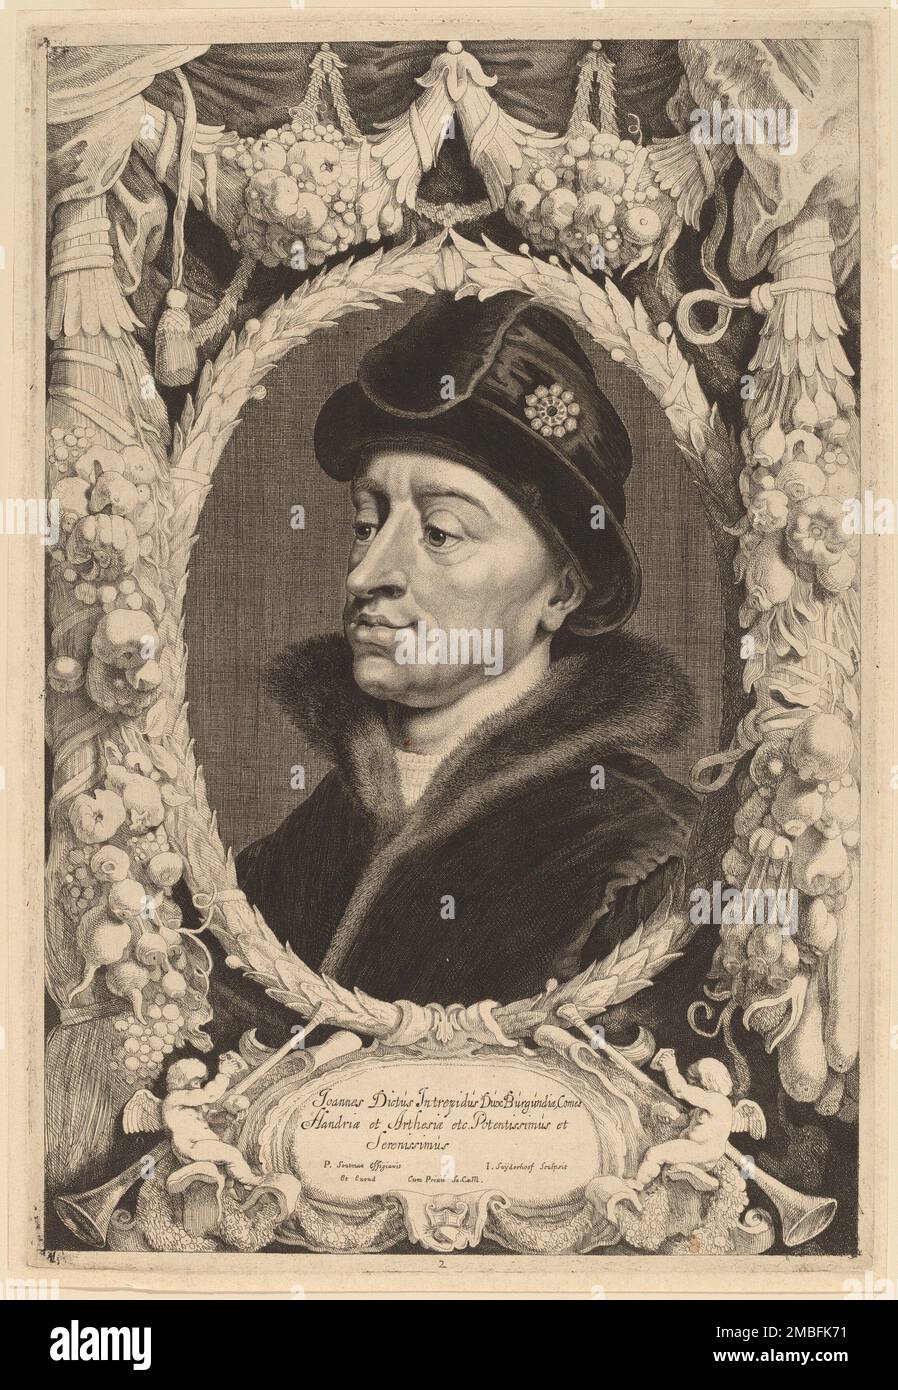 John the Fearless, Duke of Burgundy. Stock Photo